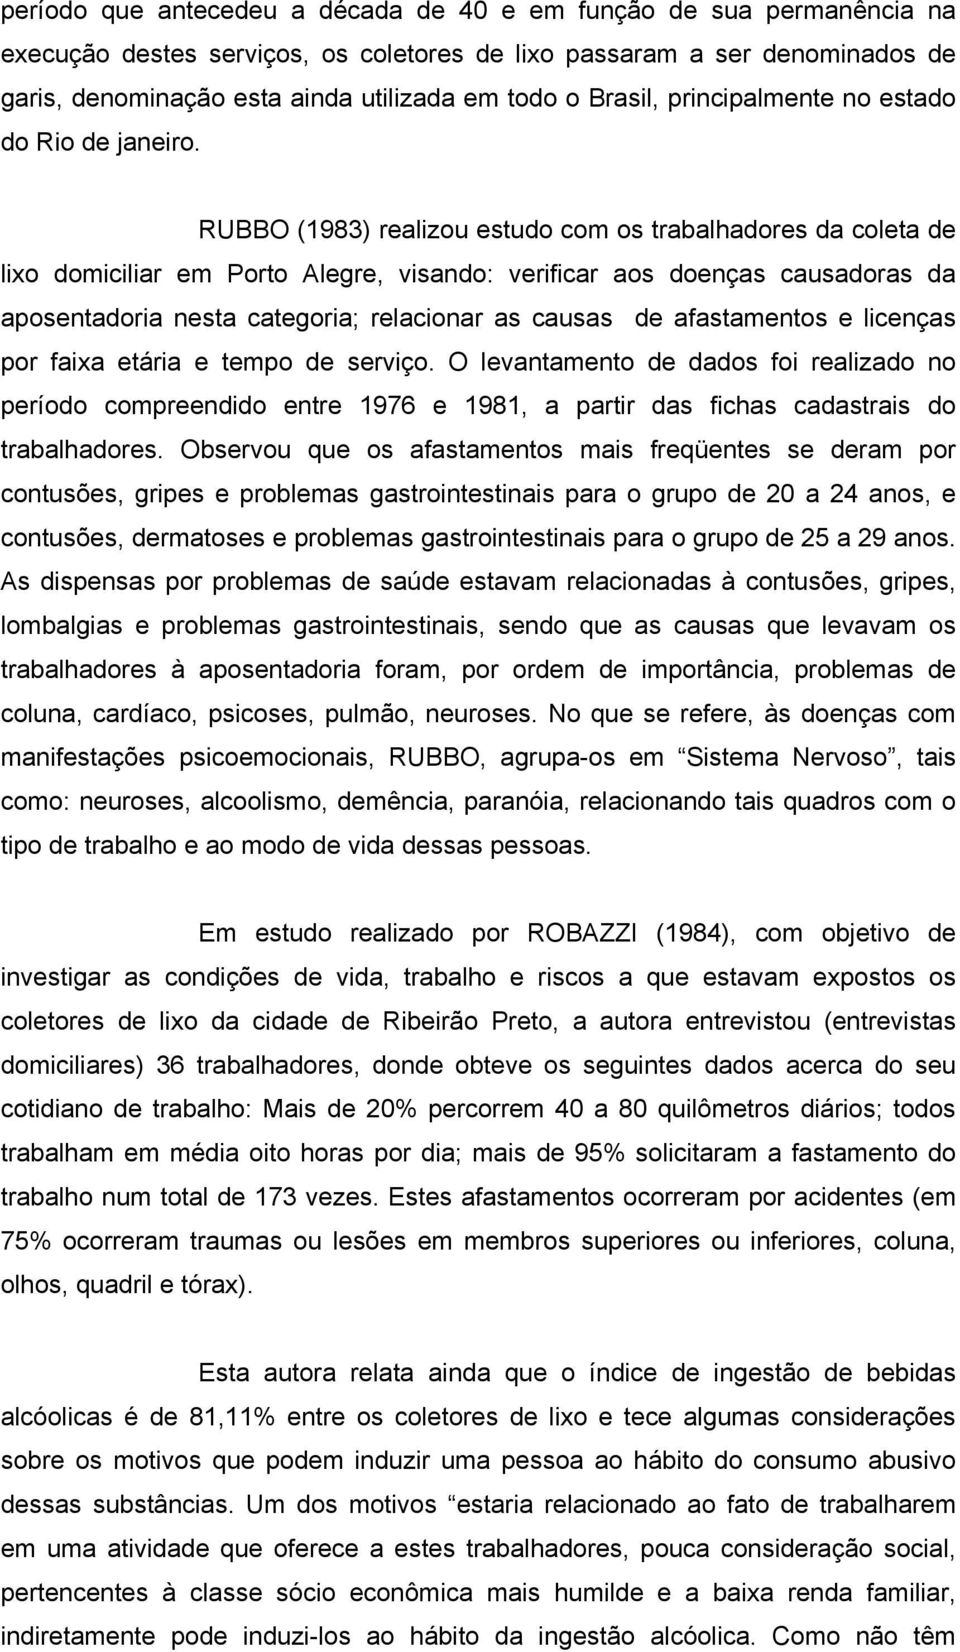 RUBBO (1983) realizou estudo com os trabalhadores da coleta de lixo domiciliar em Porto Alegre, visando: verificar aos doenças causadoras da aposentadoria nesta categoria; relacionar as causas de